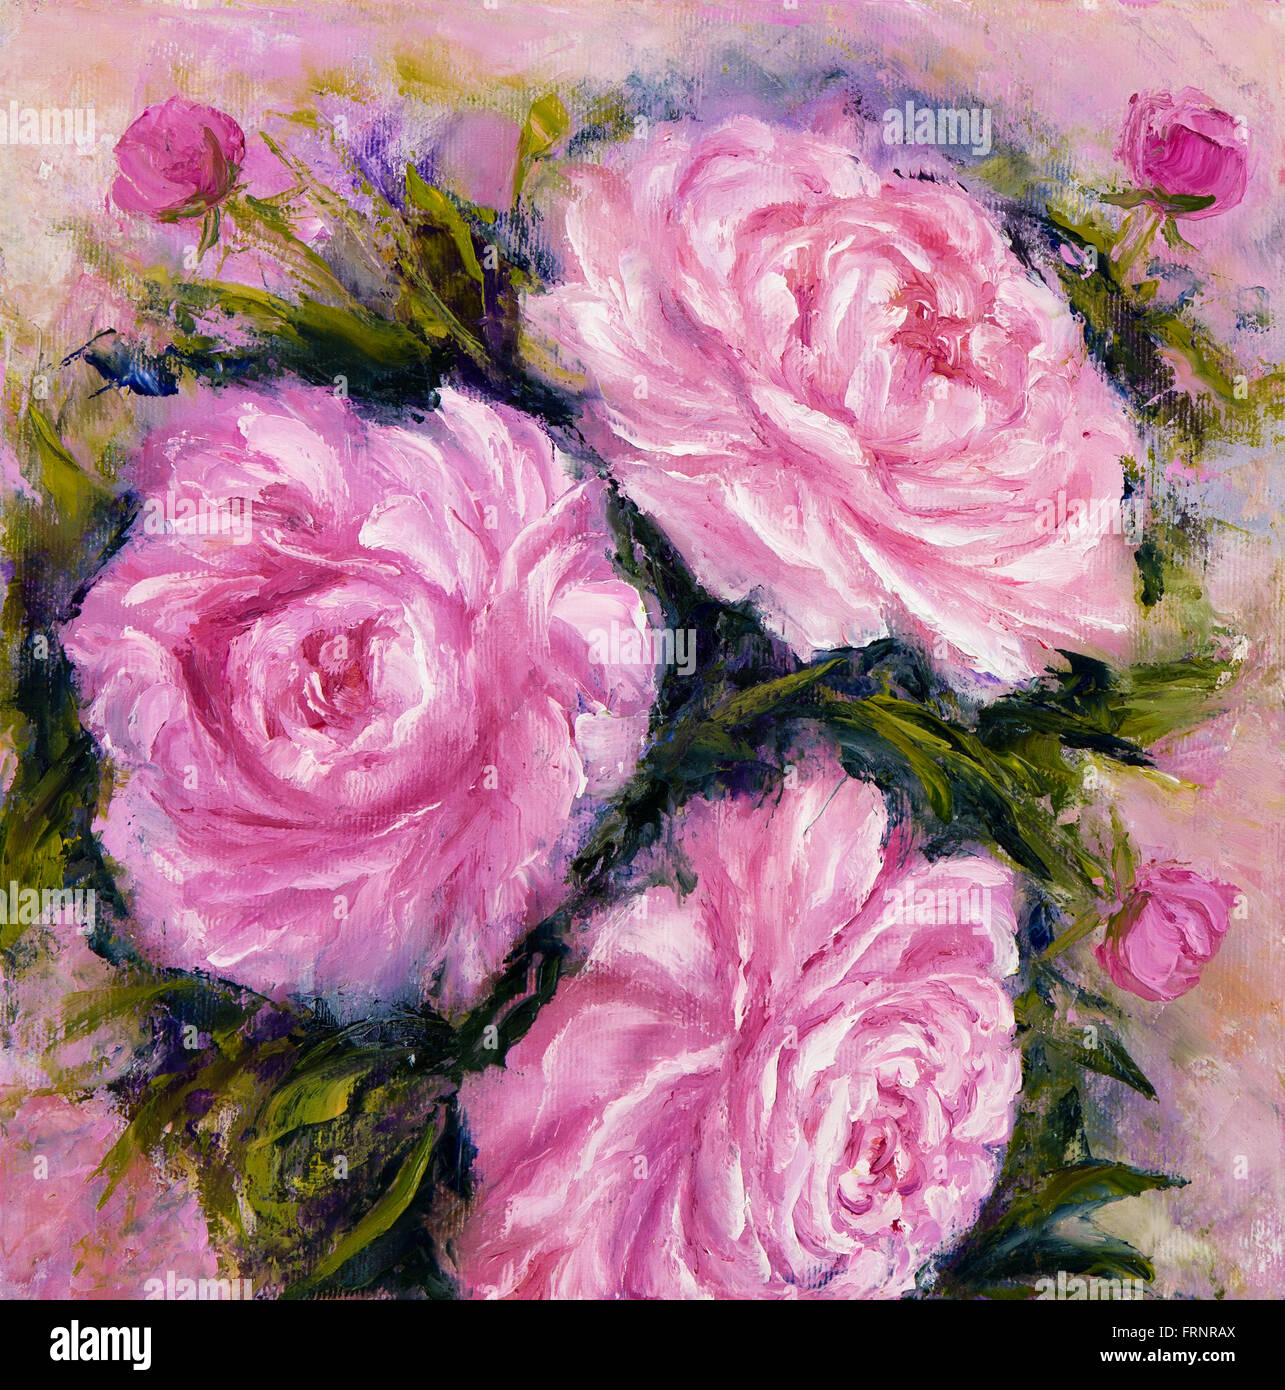 Original Ölgemälde zeigt rosa Pfingstrose Blumen Blumenstrauß. Gattung Paeonia, Familie Paeoniaceae.Modern Impressionismus, moderne, mari Stockfoto